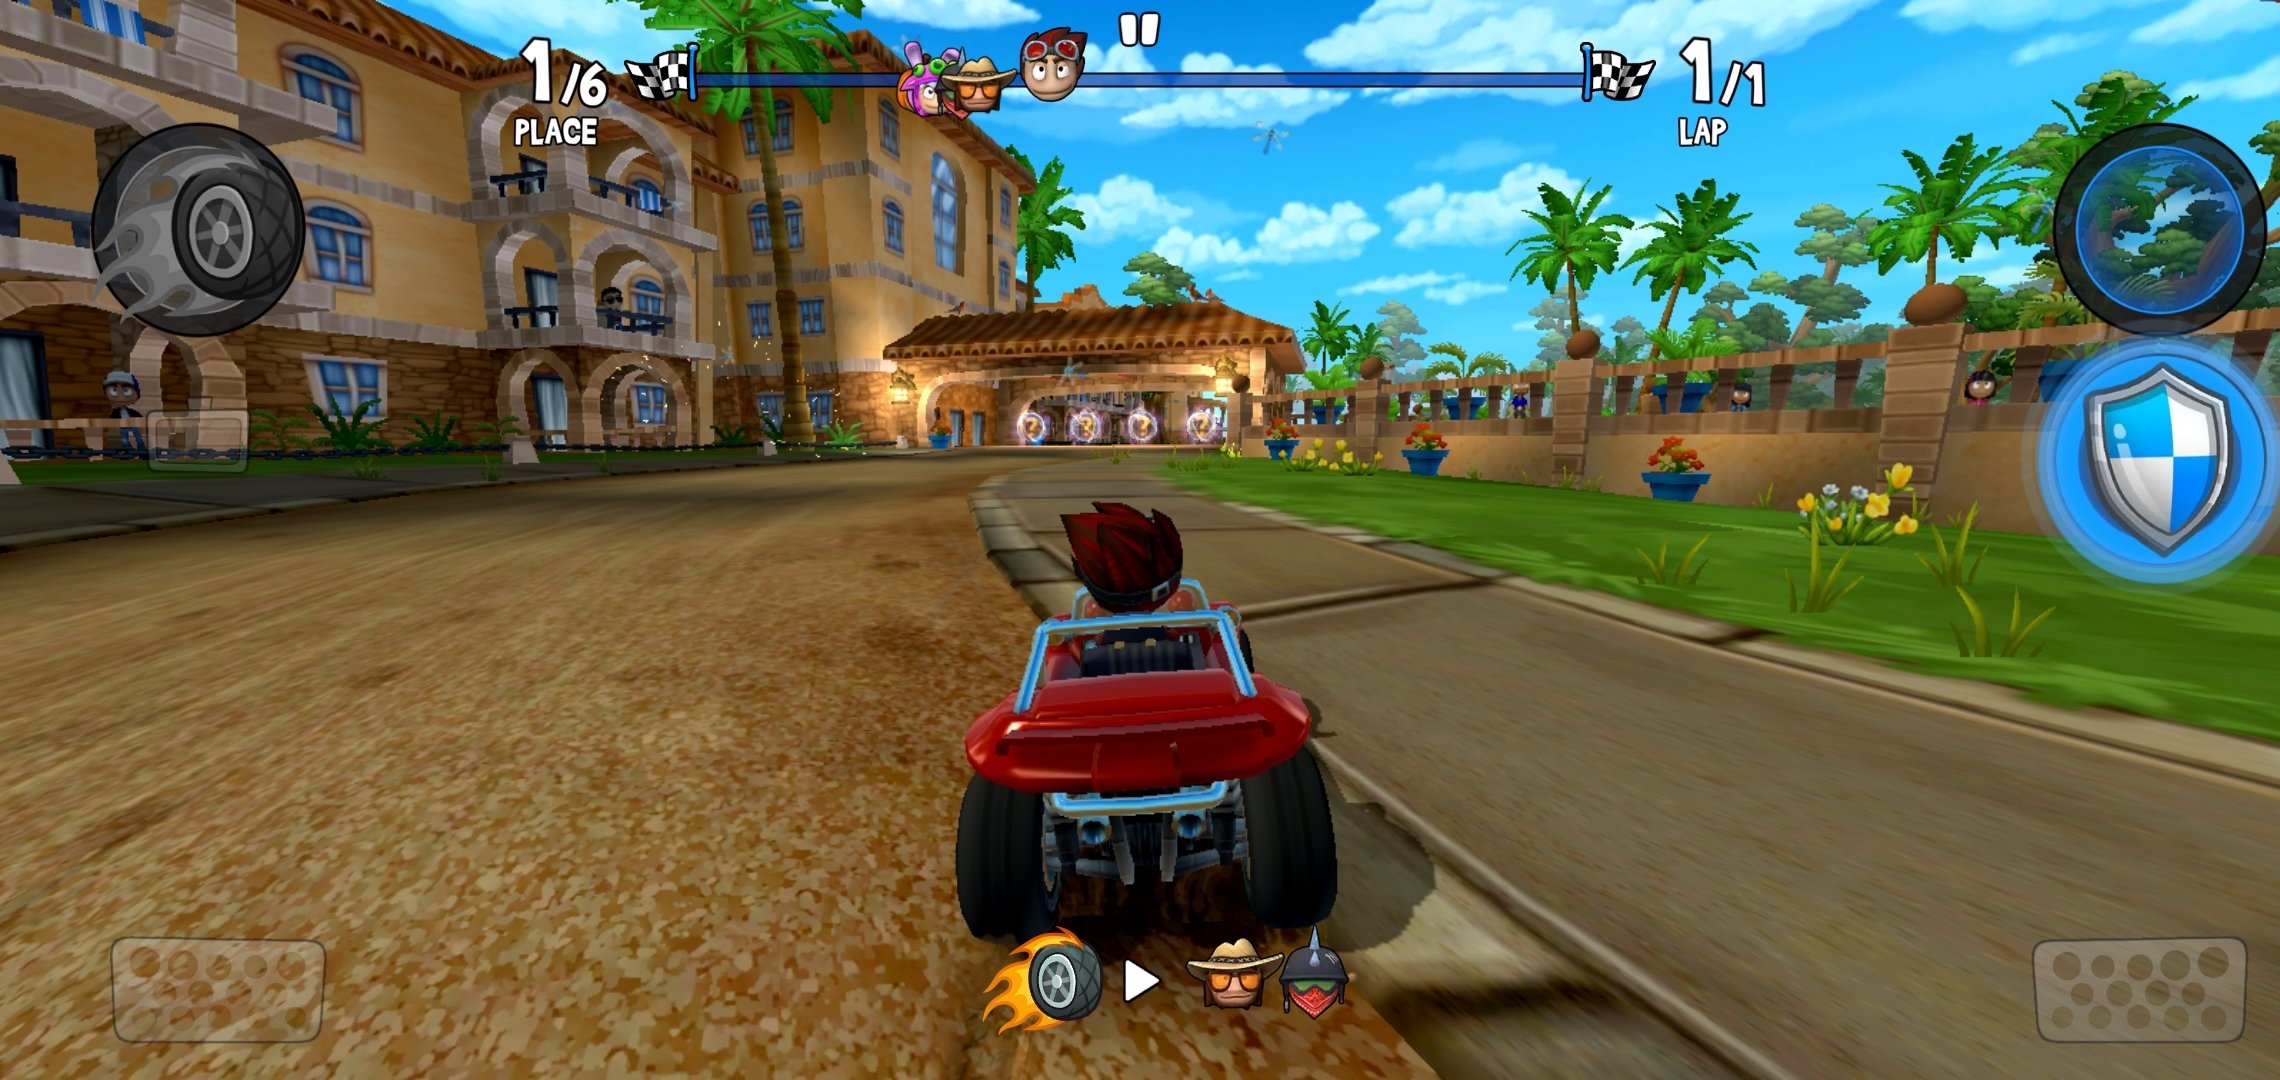 beach buggy racing 2 mod apk unlocked all